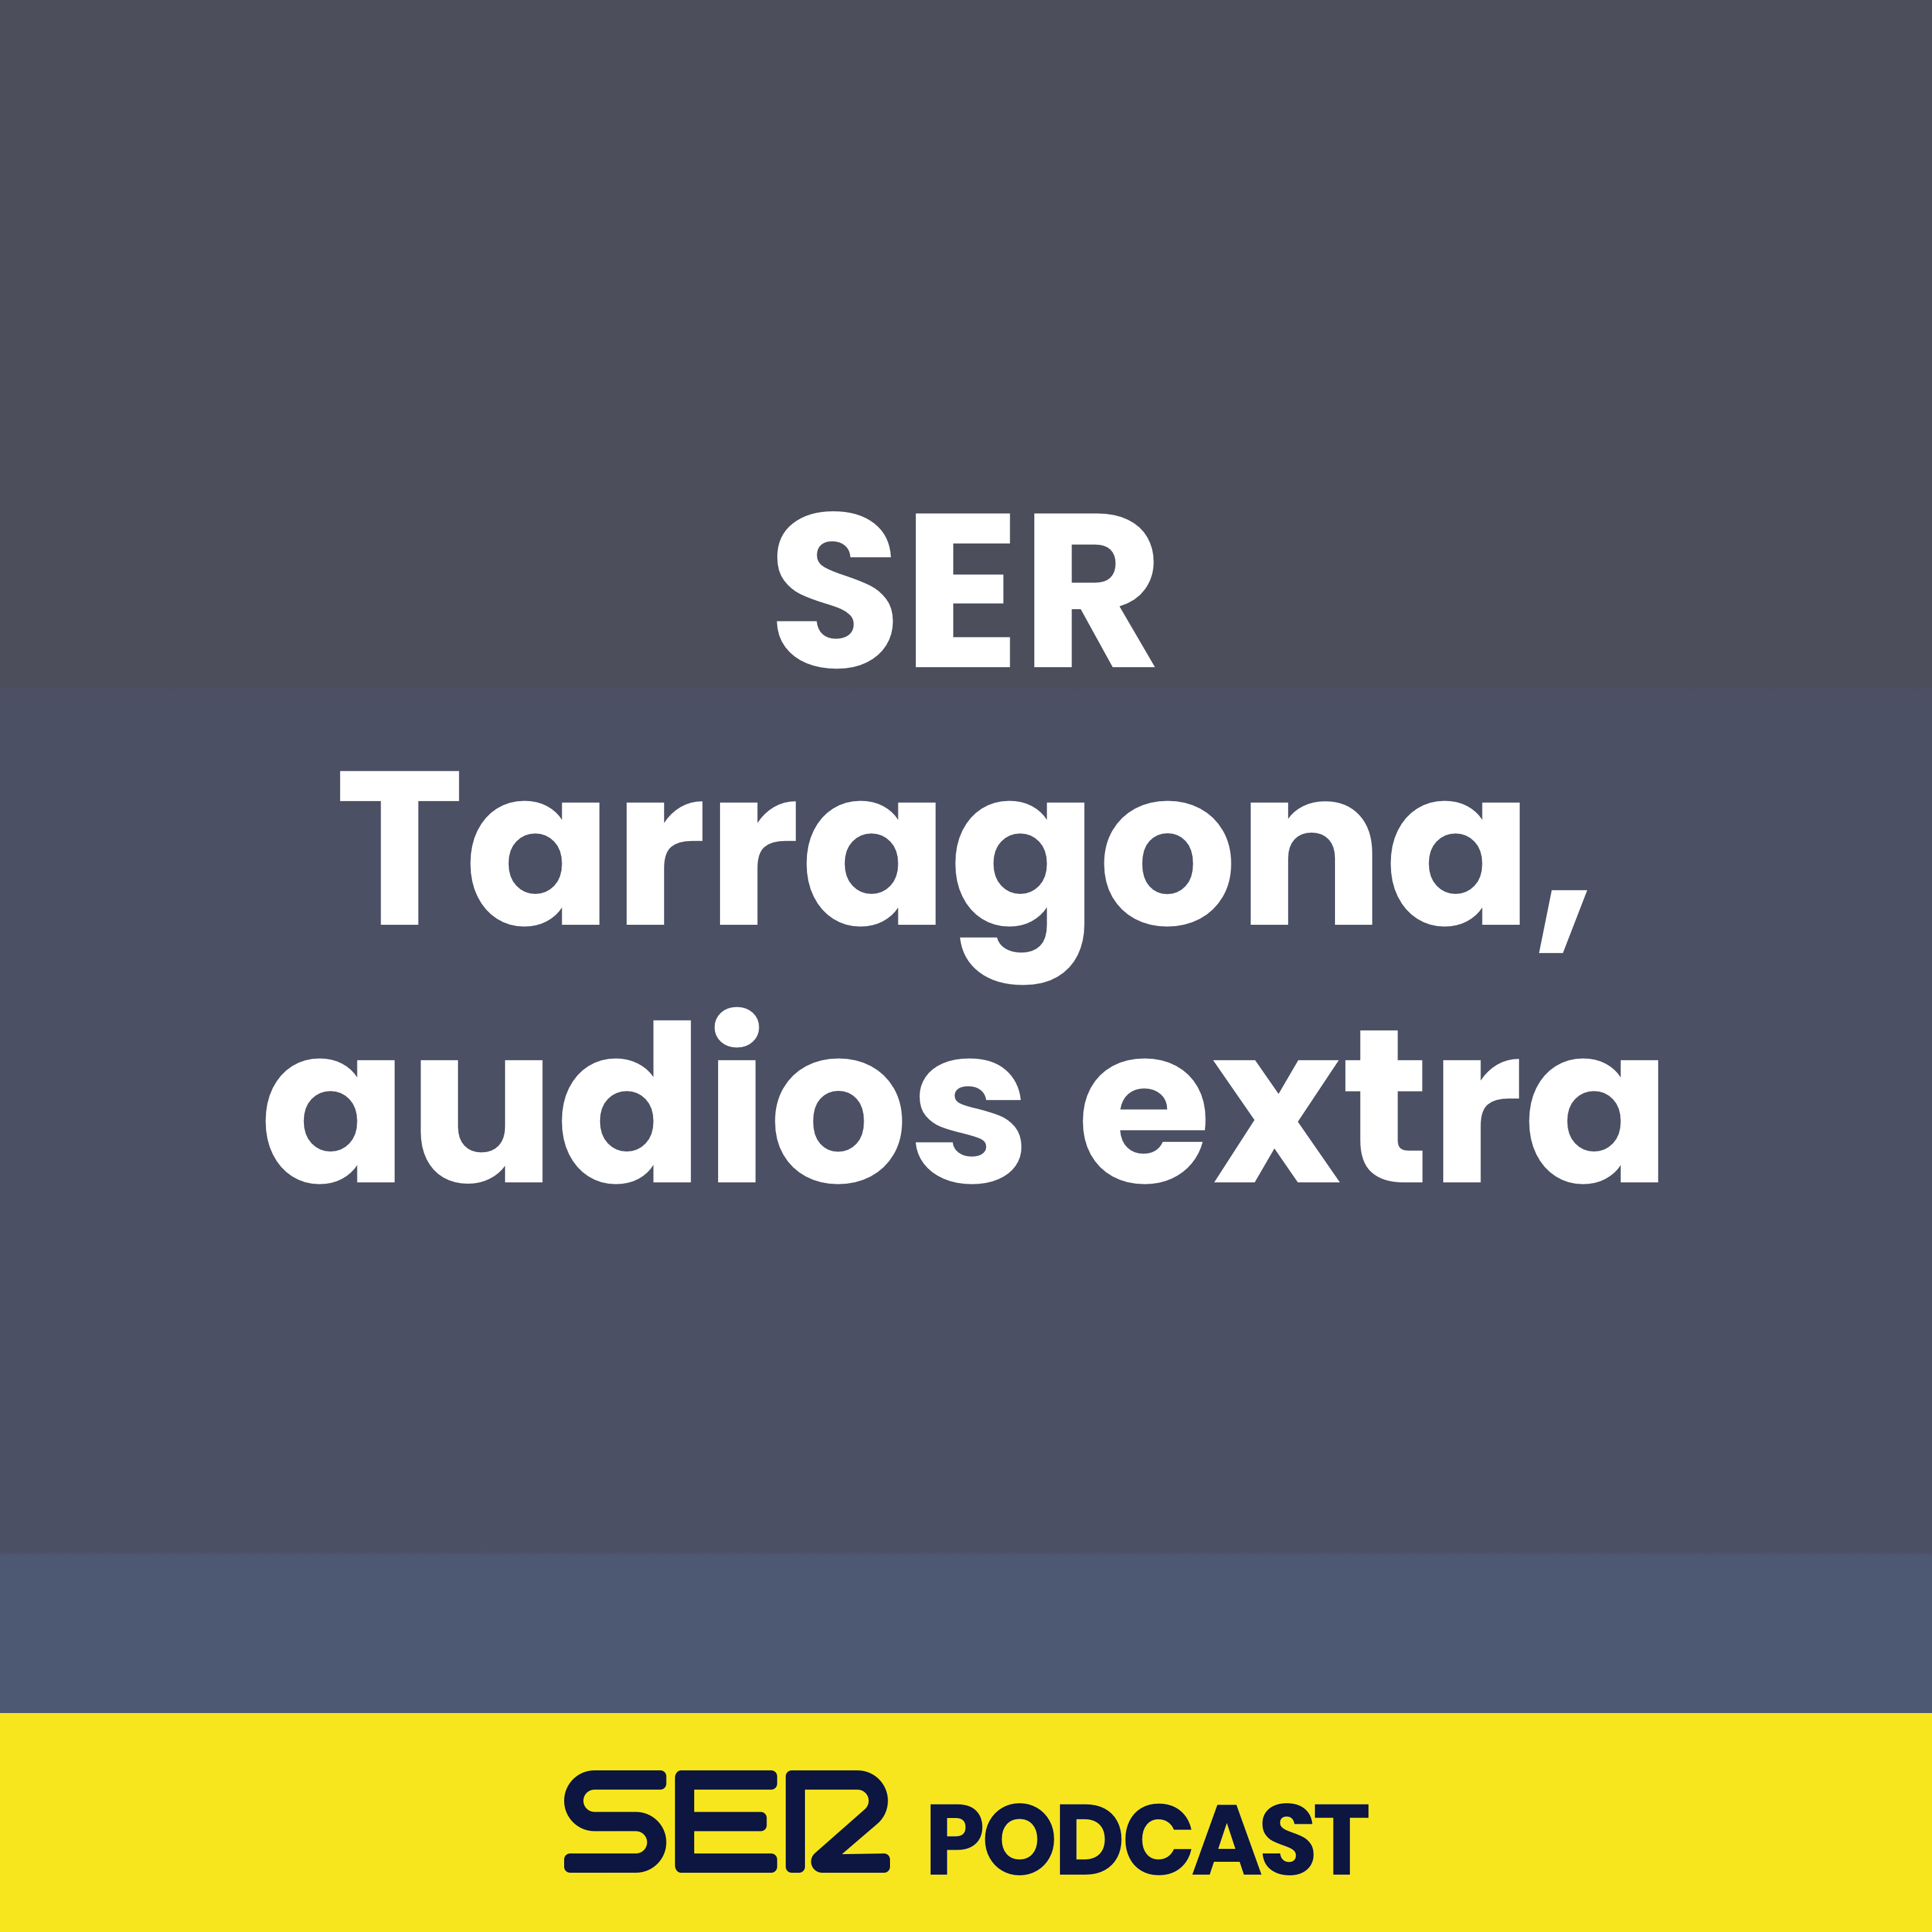 SER Tarragona, audios extra